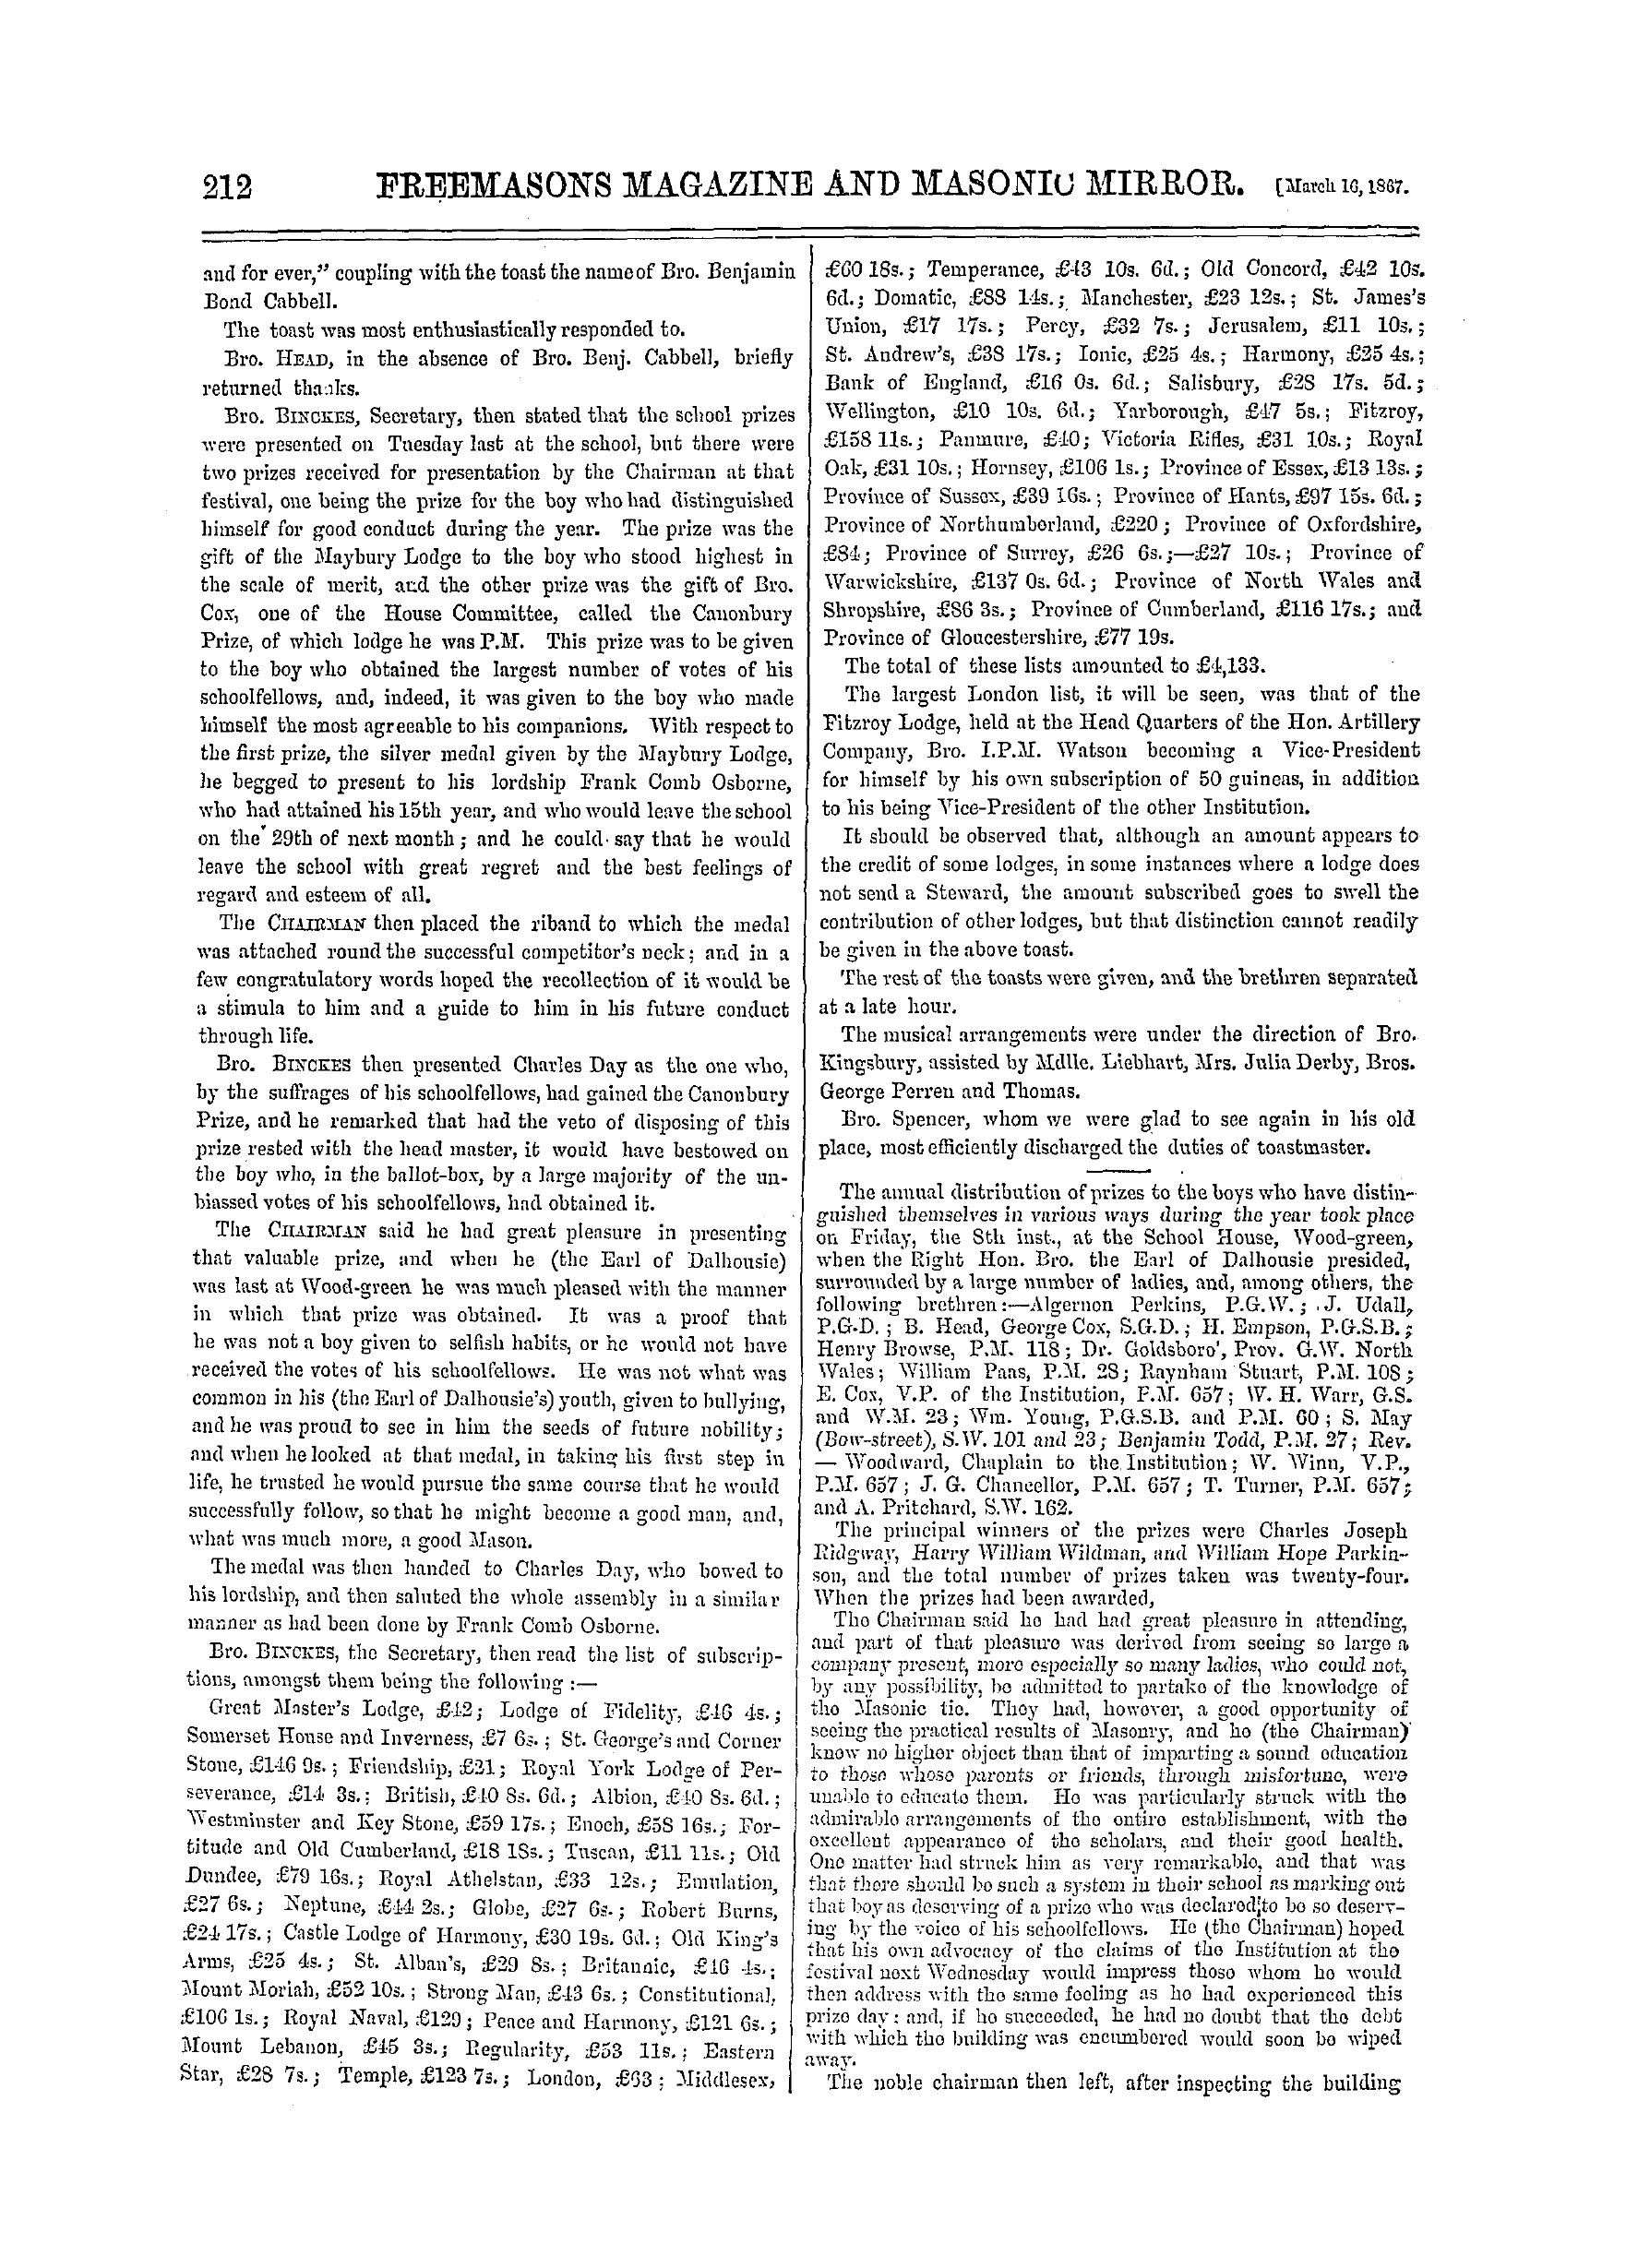 The Freemasons' Monthly Magazine: 1867-03-16: 12